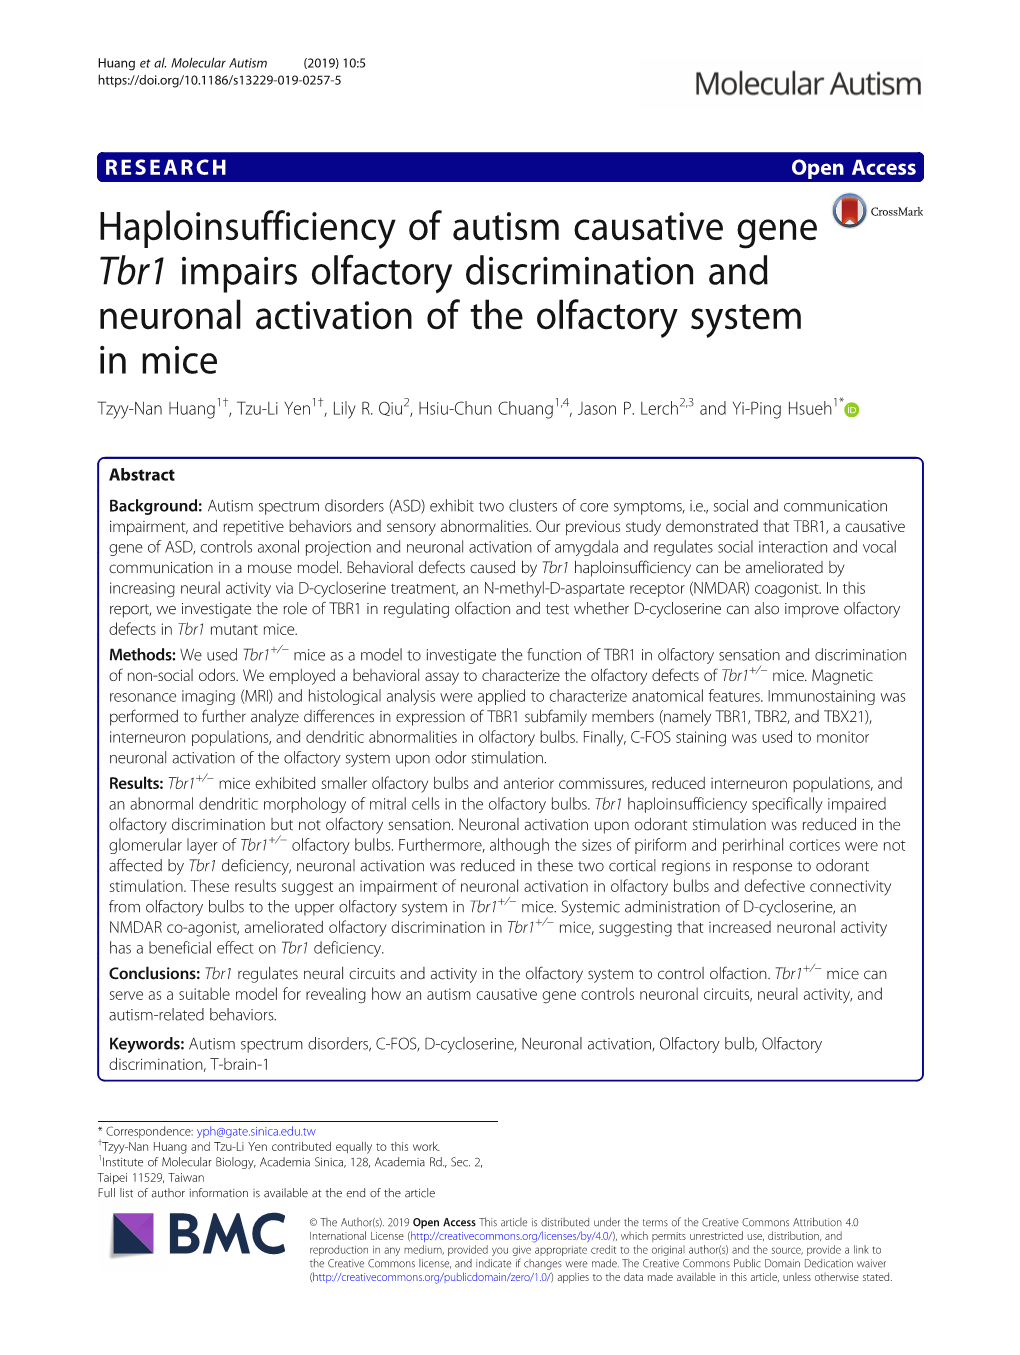 Haploinsufficiency of Autism Causative Gene Tbr1 Impairs Olfactory